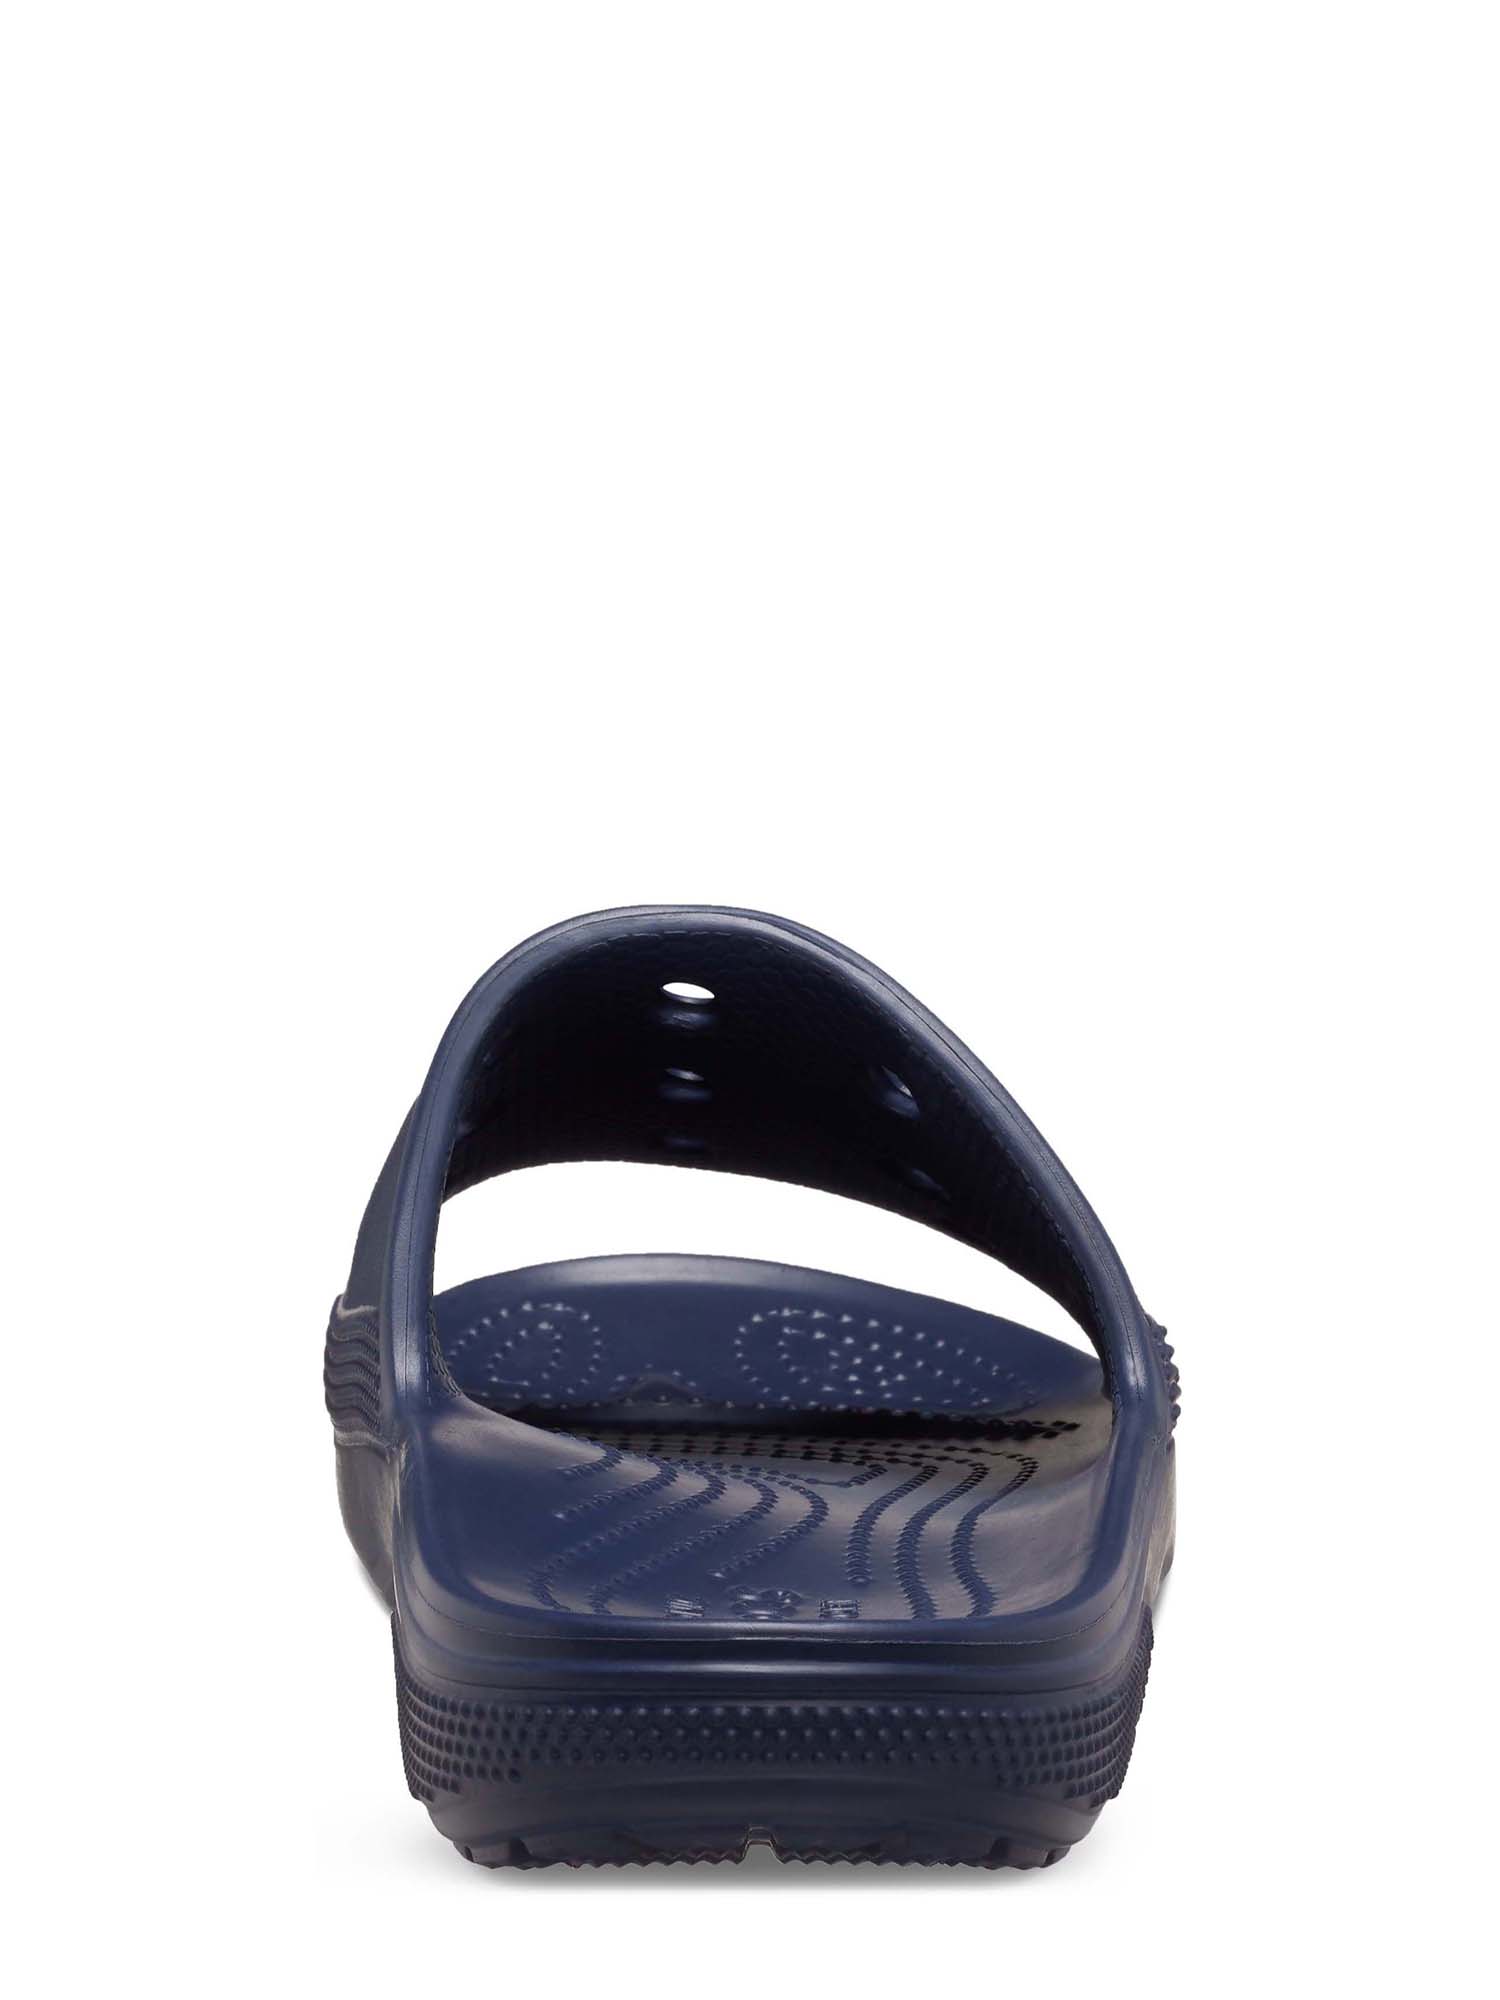 Crocs Men’s and Women’s Unisex Baya II Slide Sandals - image 2 of 5